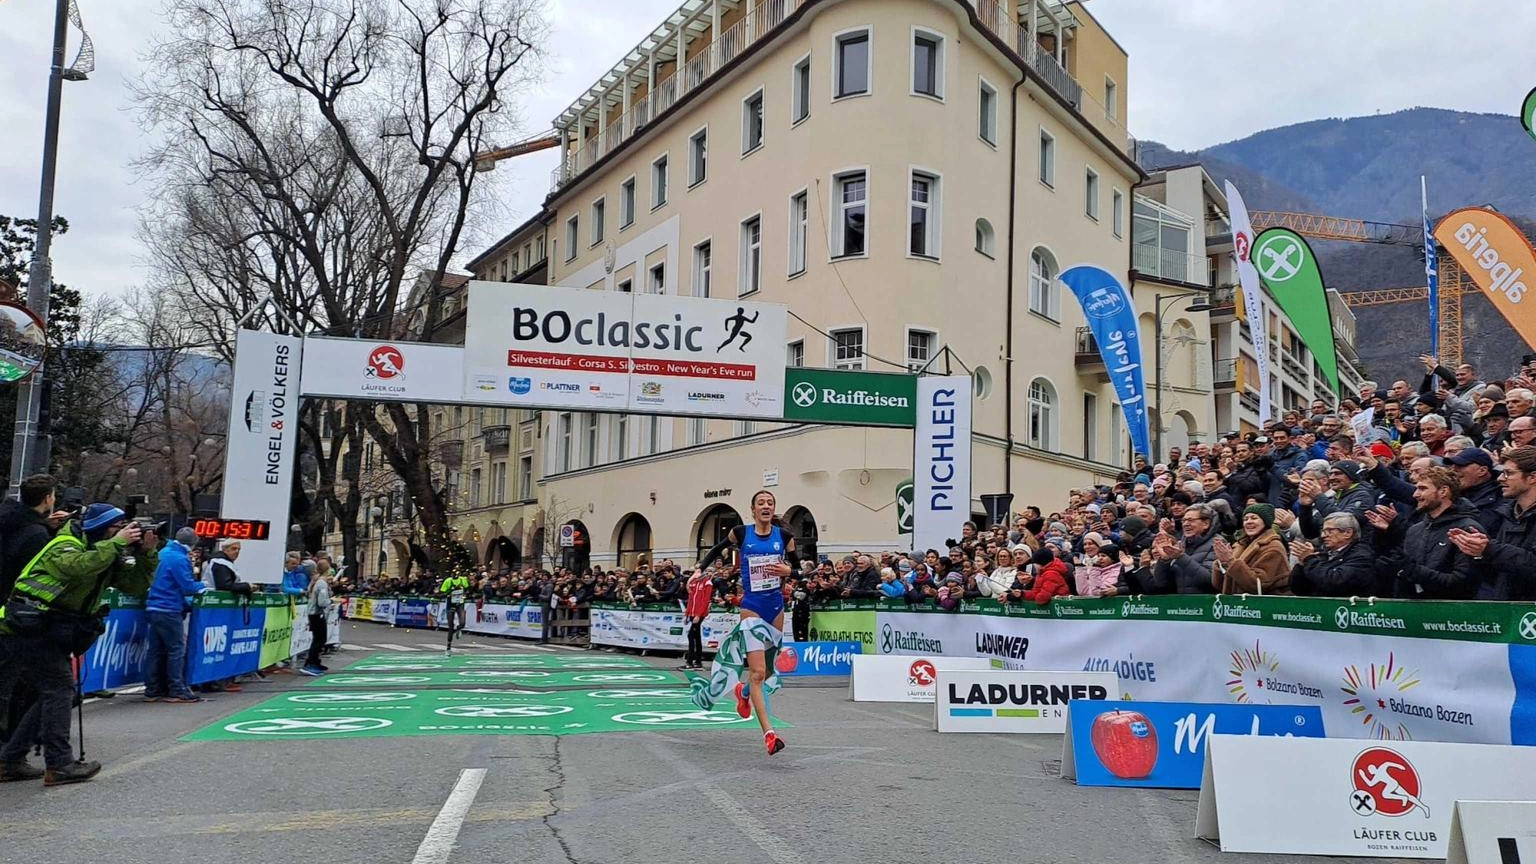 Battocletti vince la corsa di San Silvestro Boclassic a Bolzano